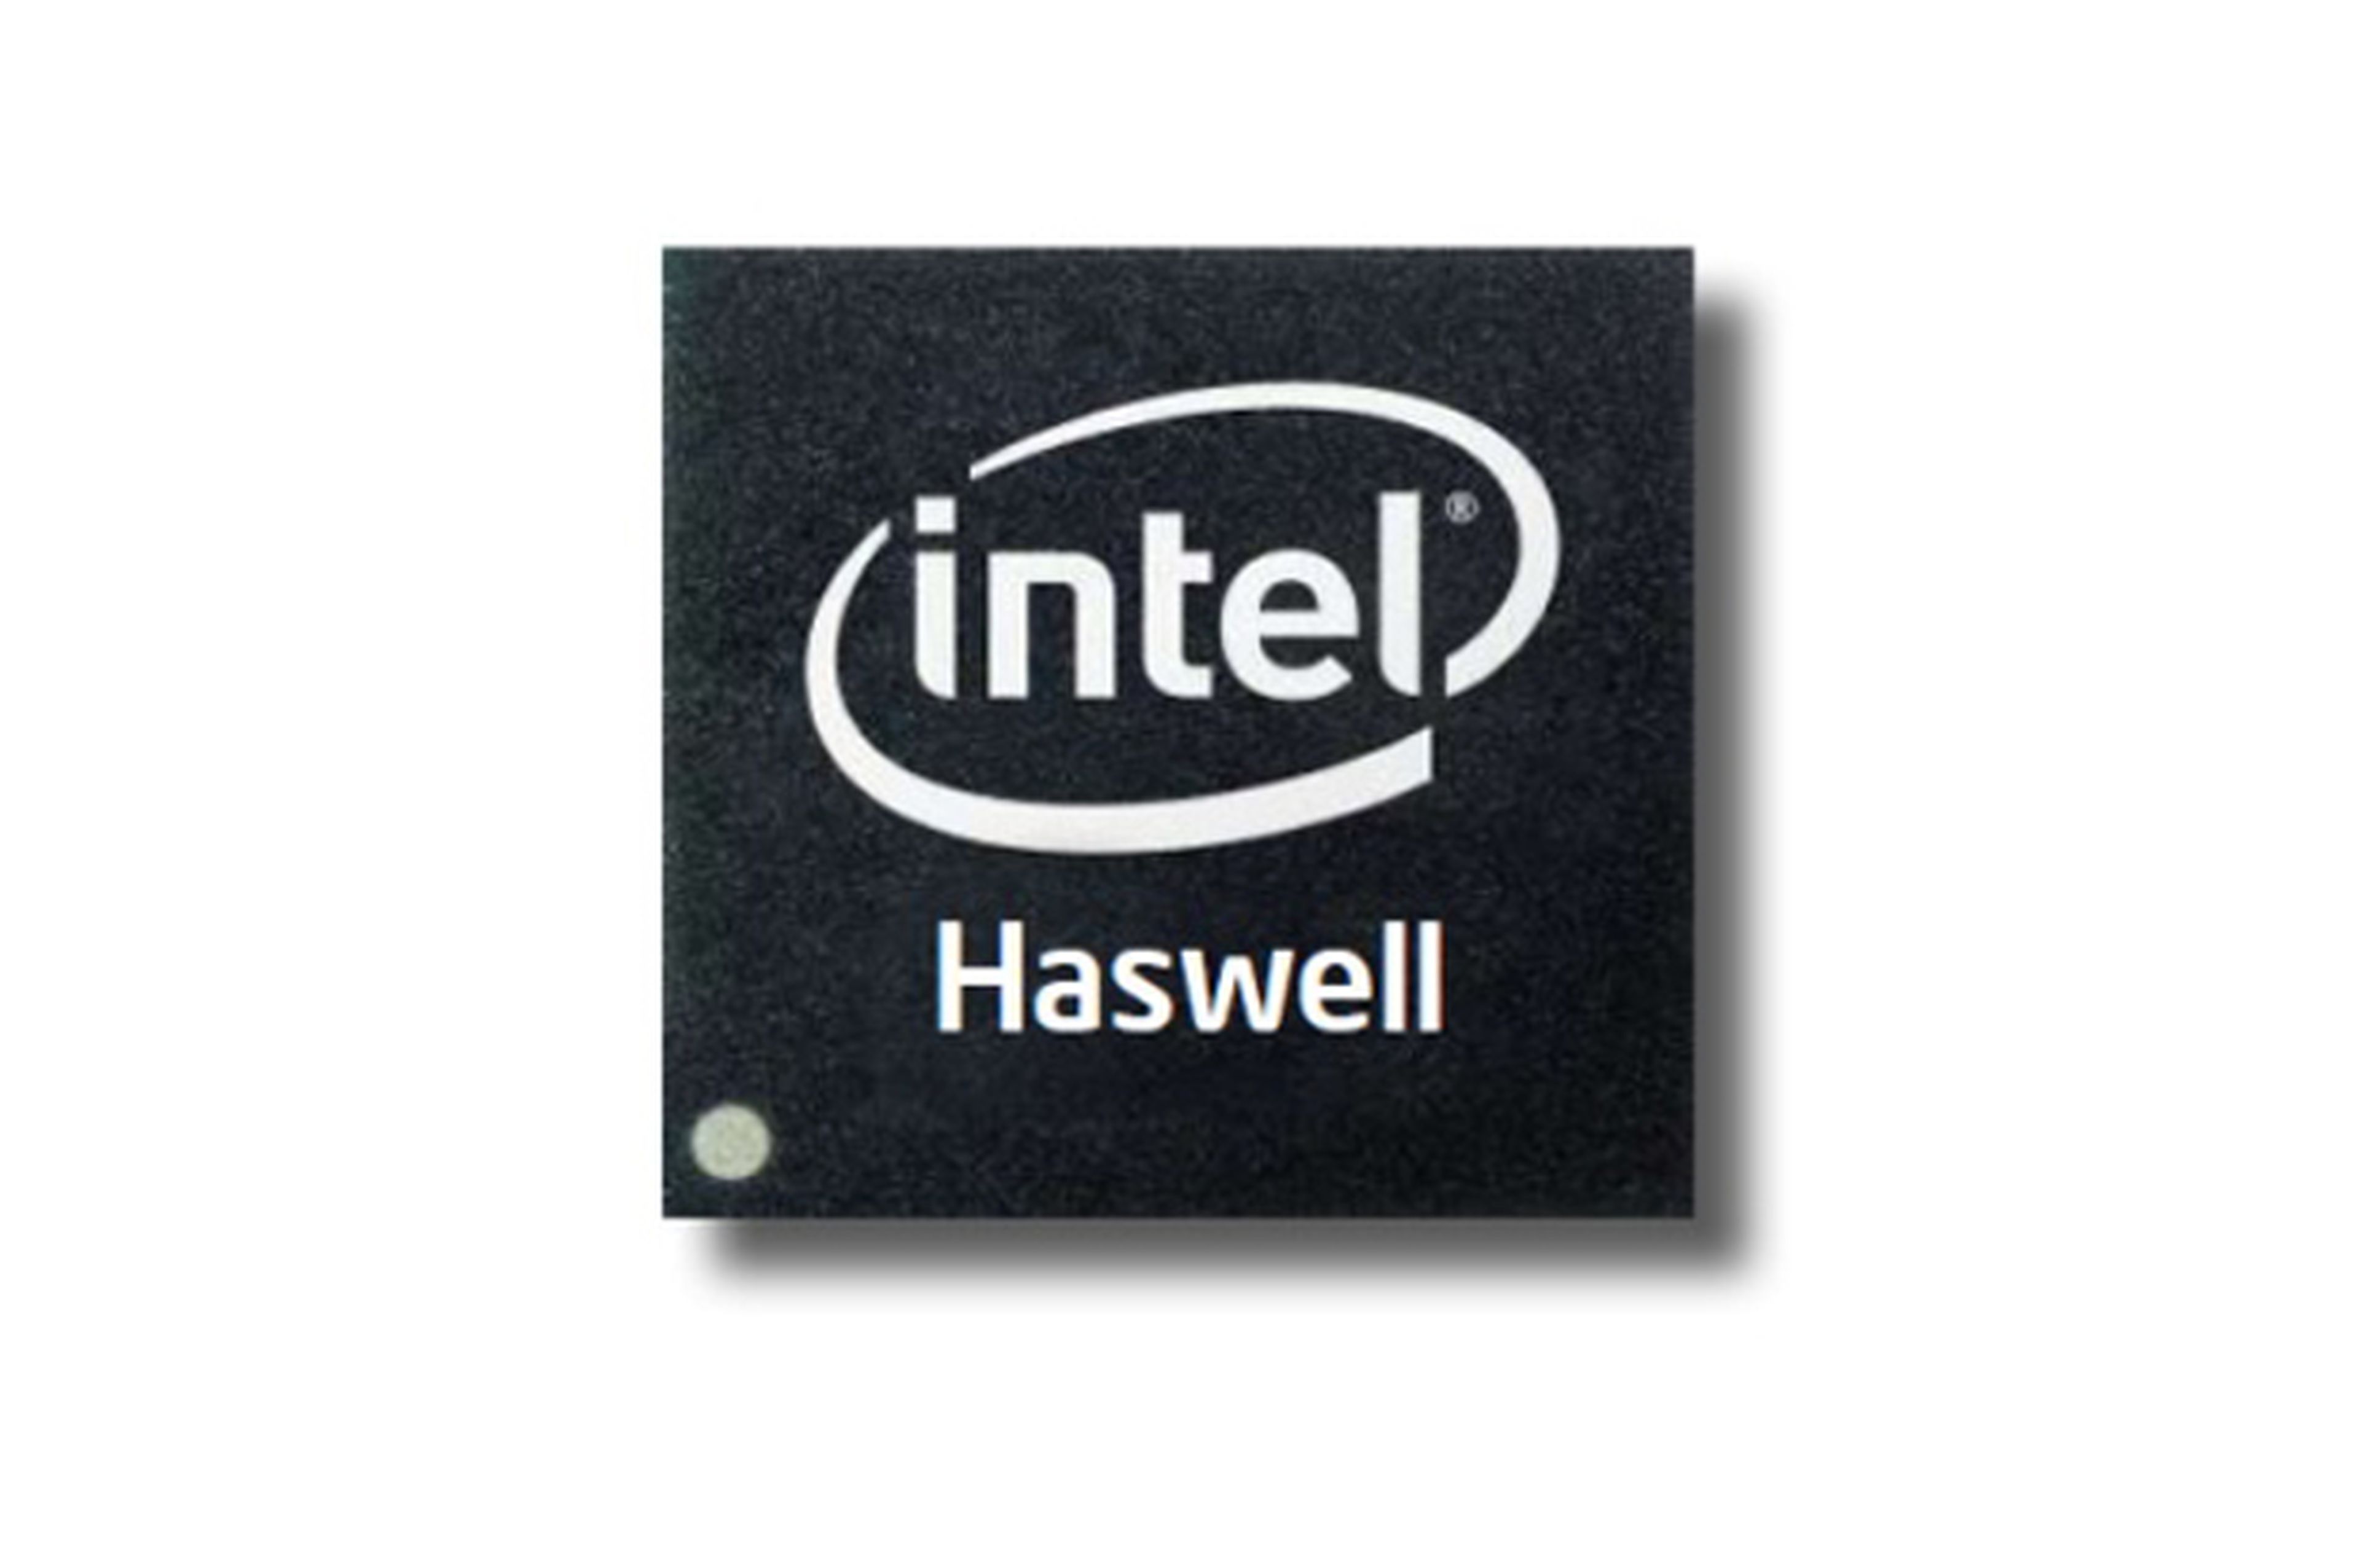 Al parecer Intel lanzará en la segunda mitad de 2014 una nueva versión de sus procesadores Haswell